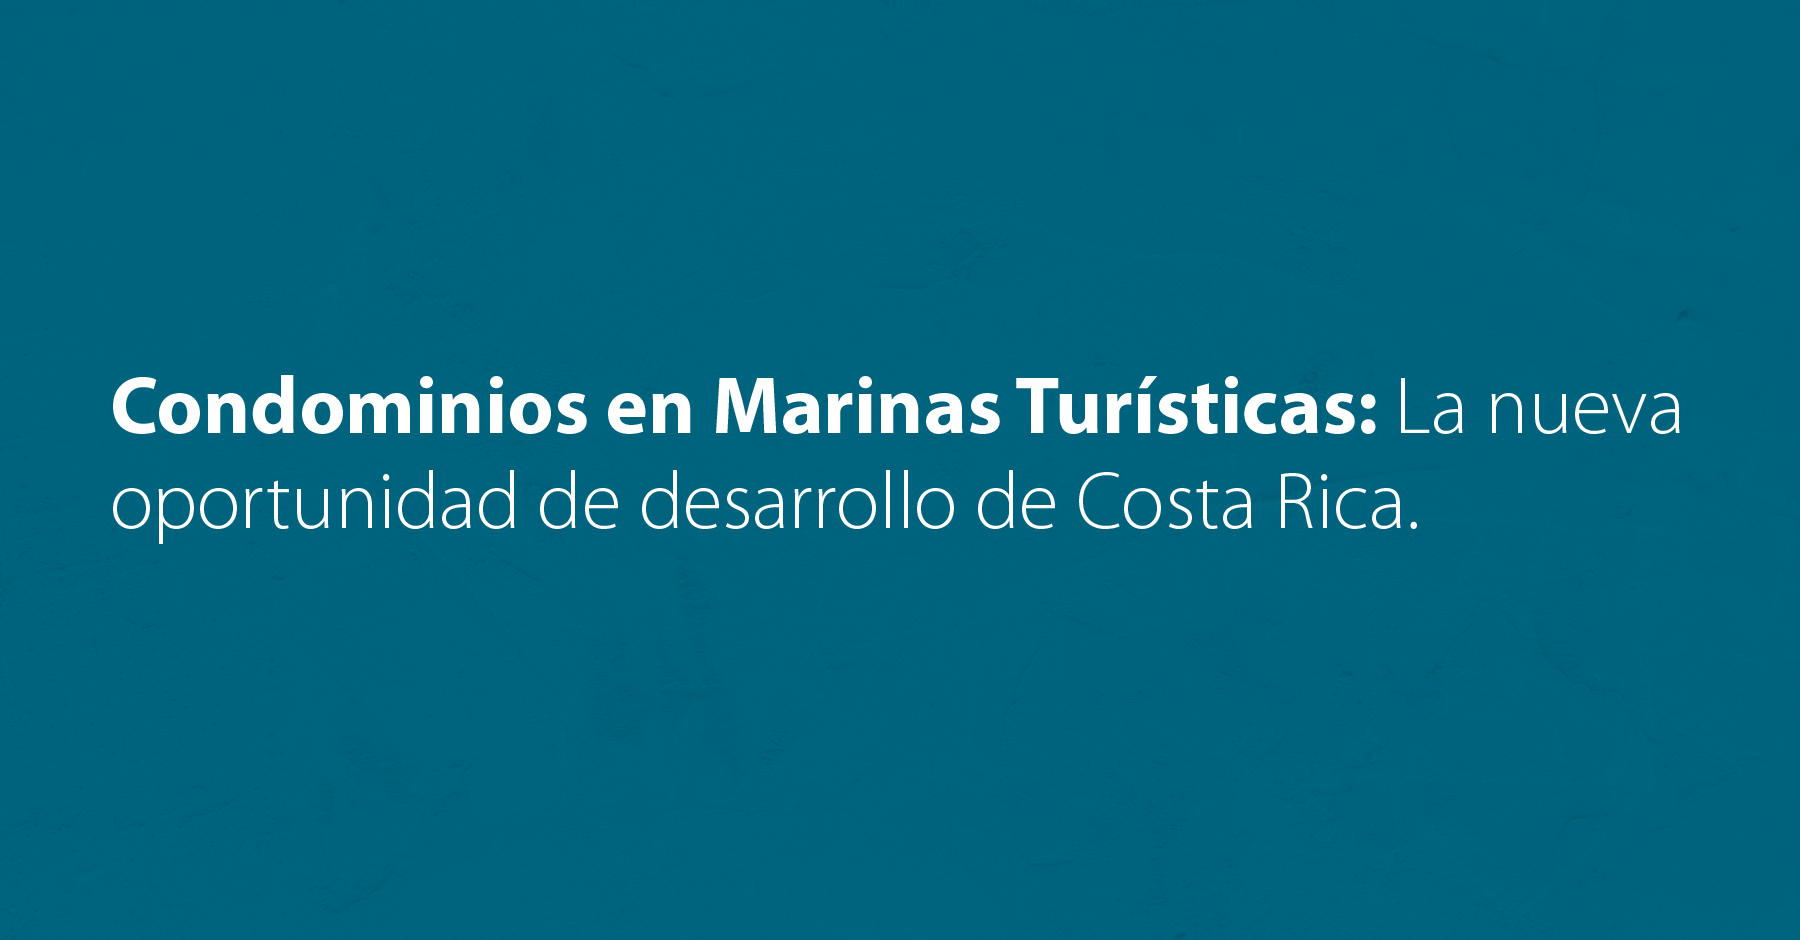 Condominios en Marinas Turísticas: La nueva oportunidad de desarrollo de Costa Rica